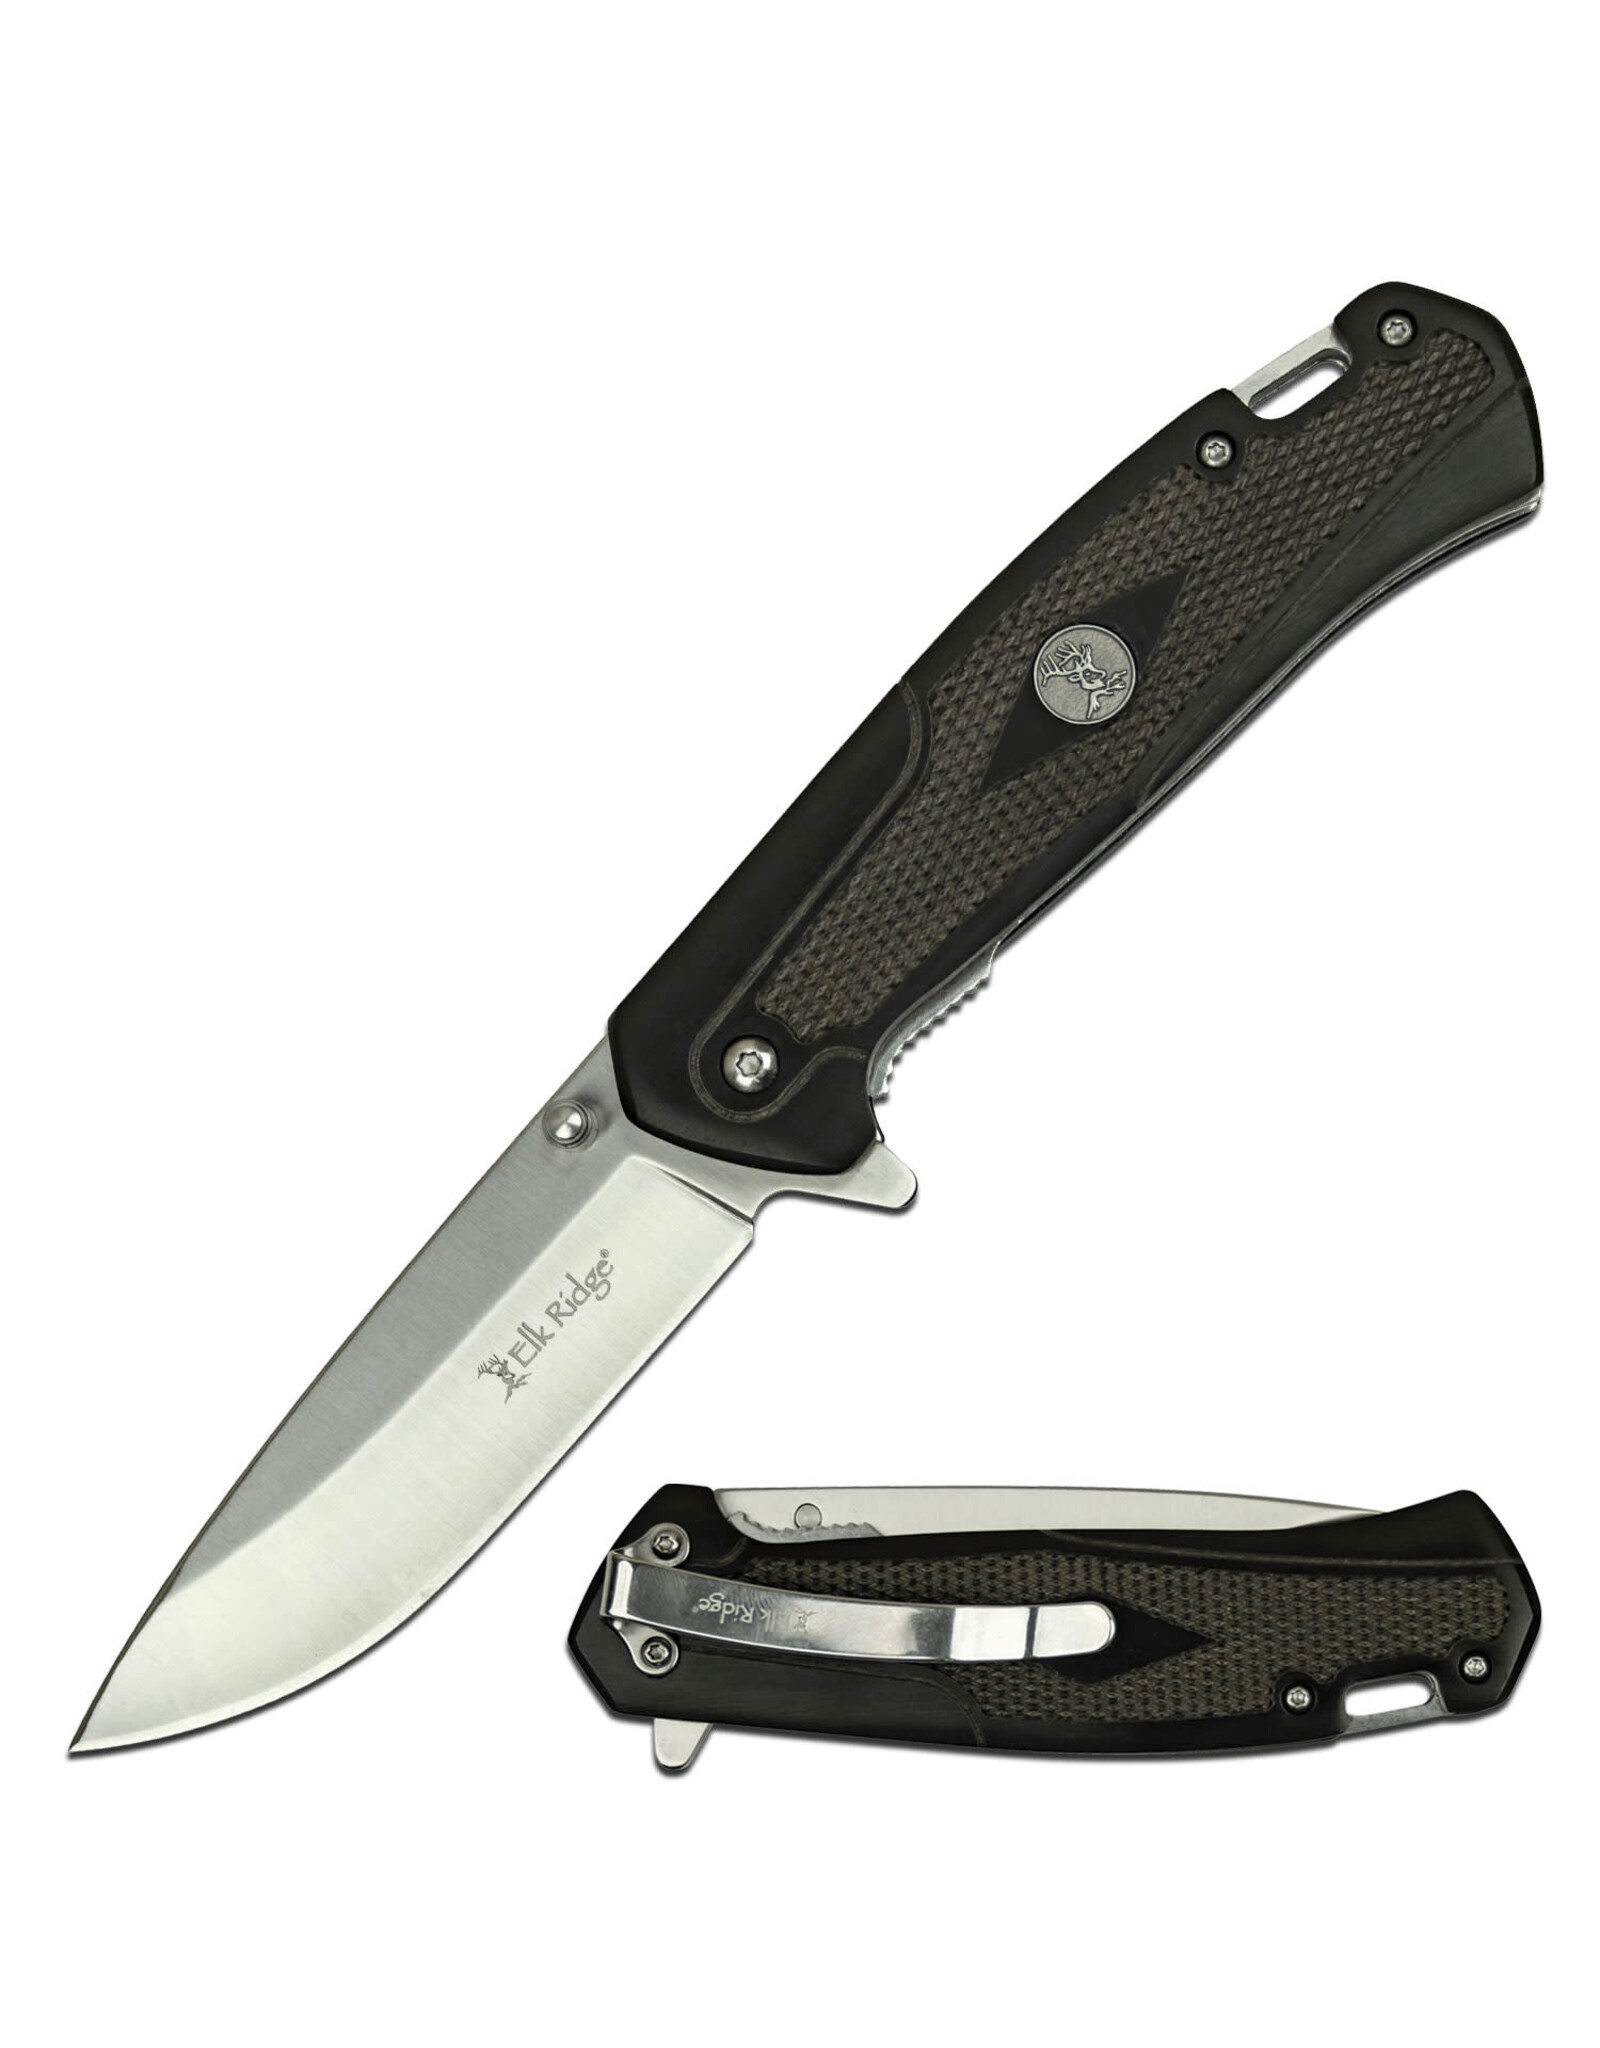 Elk Ridge Manual Folding Knife - Gentleman's Knife - Trapper Knife